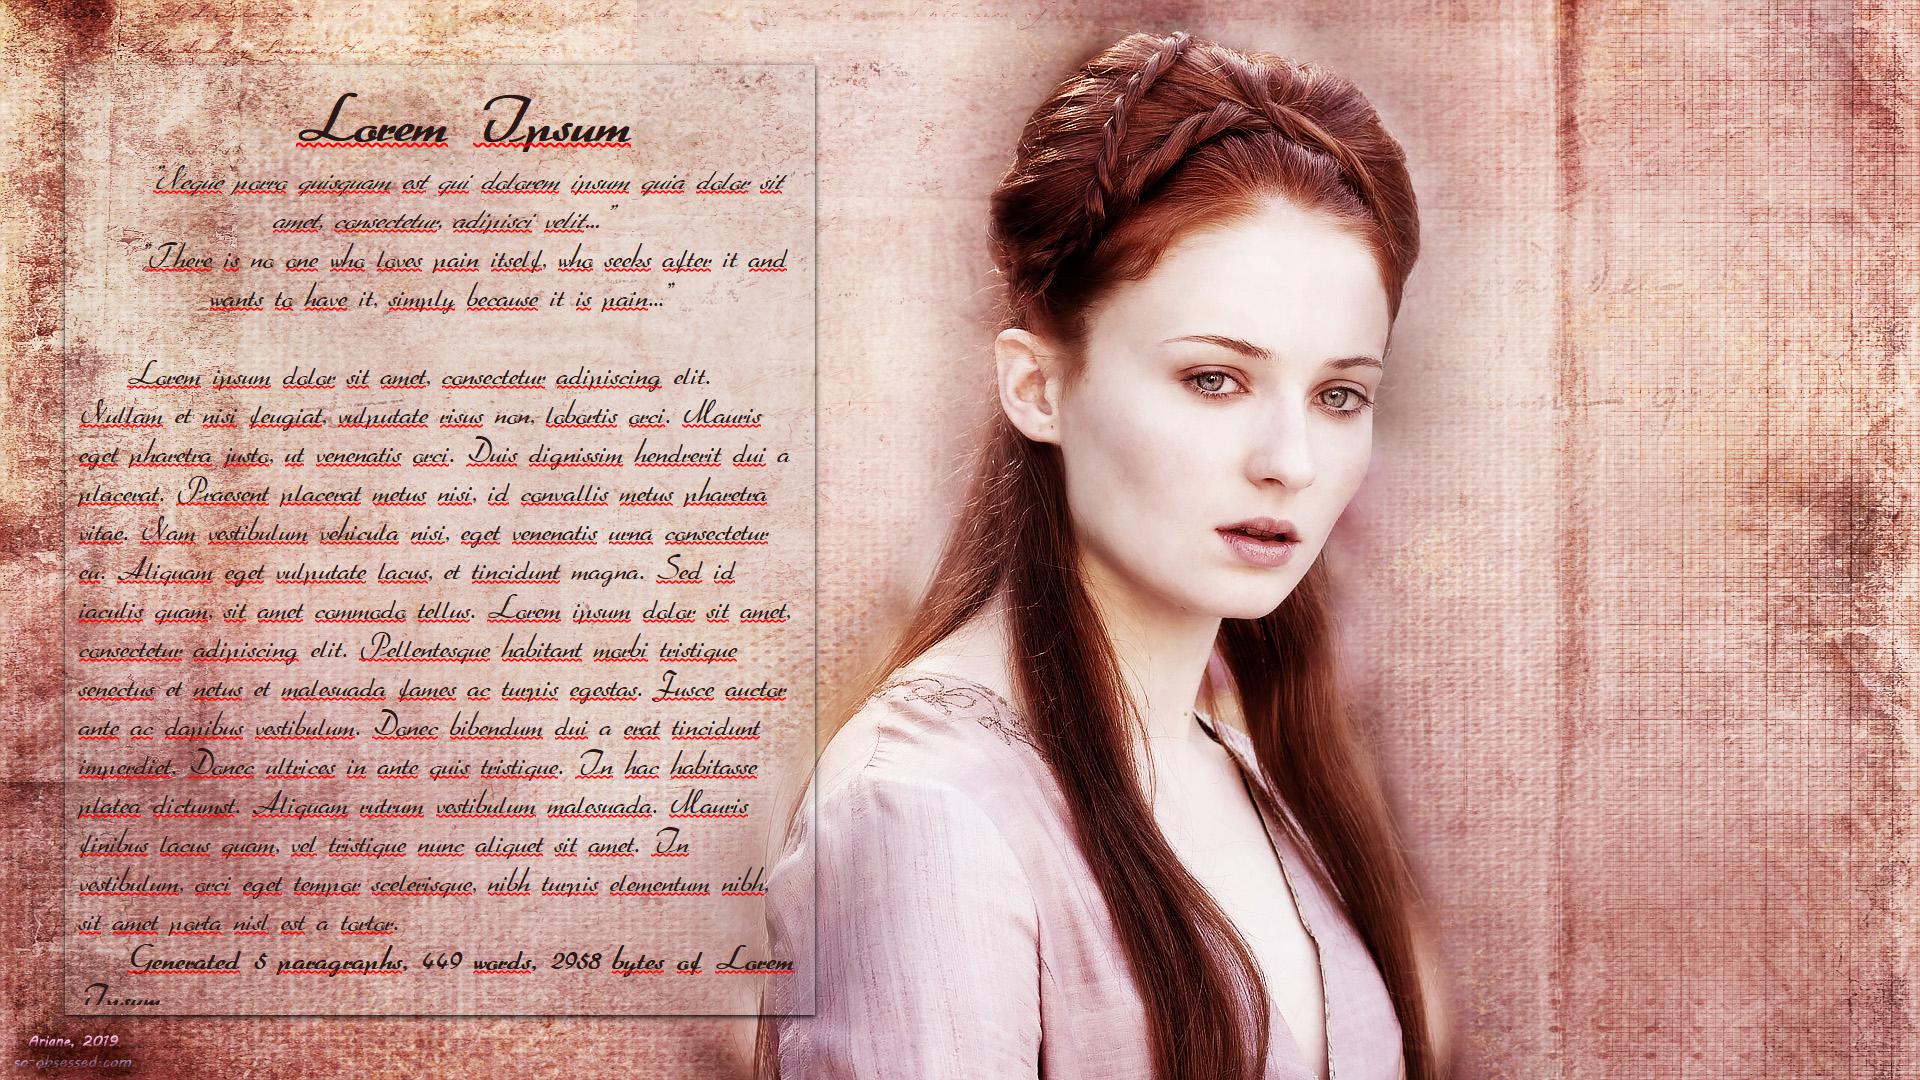 FocusWriter Theme – Game Of Thrones: Sansa